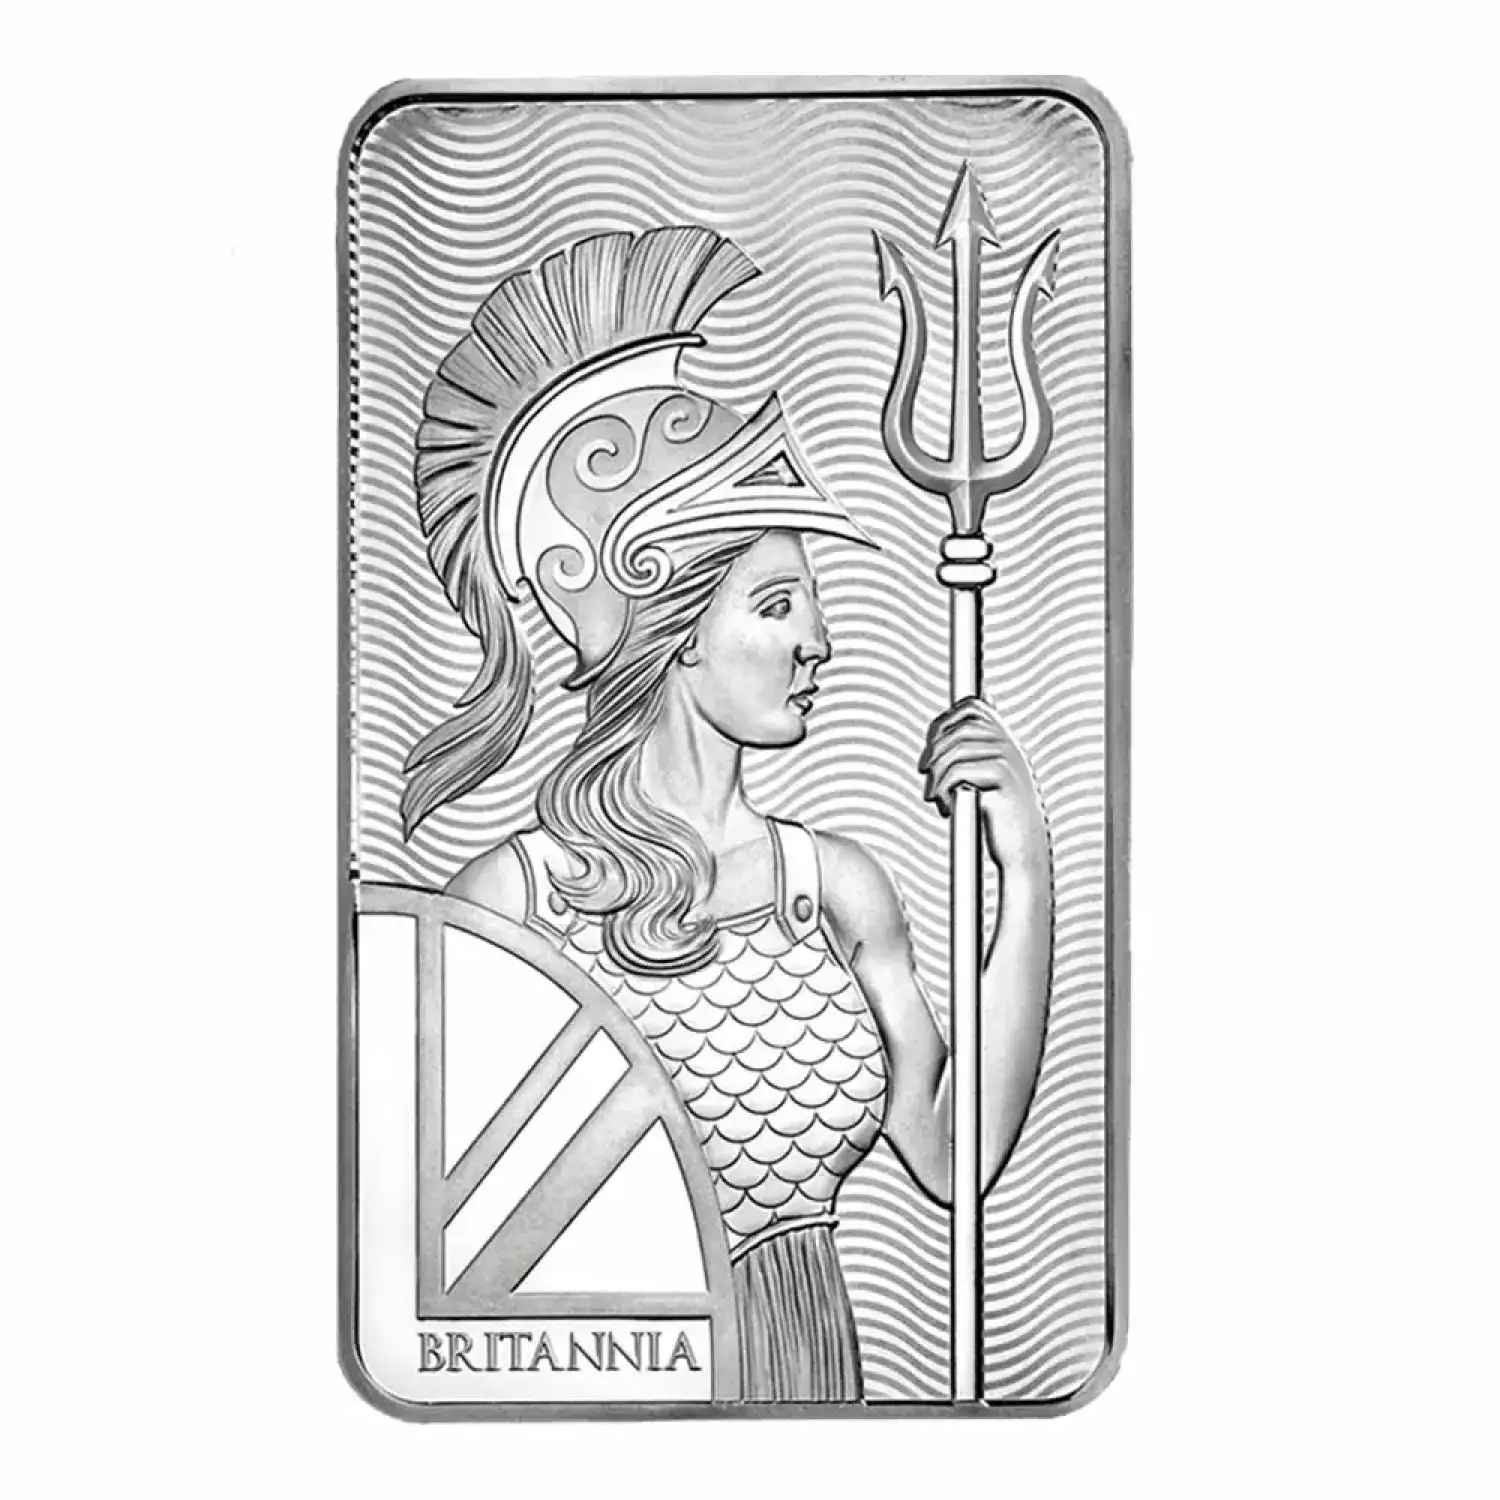 10 oz Silver Britannia Bar (3)